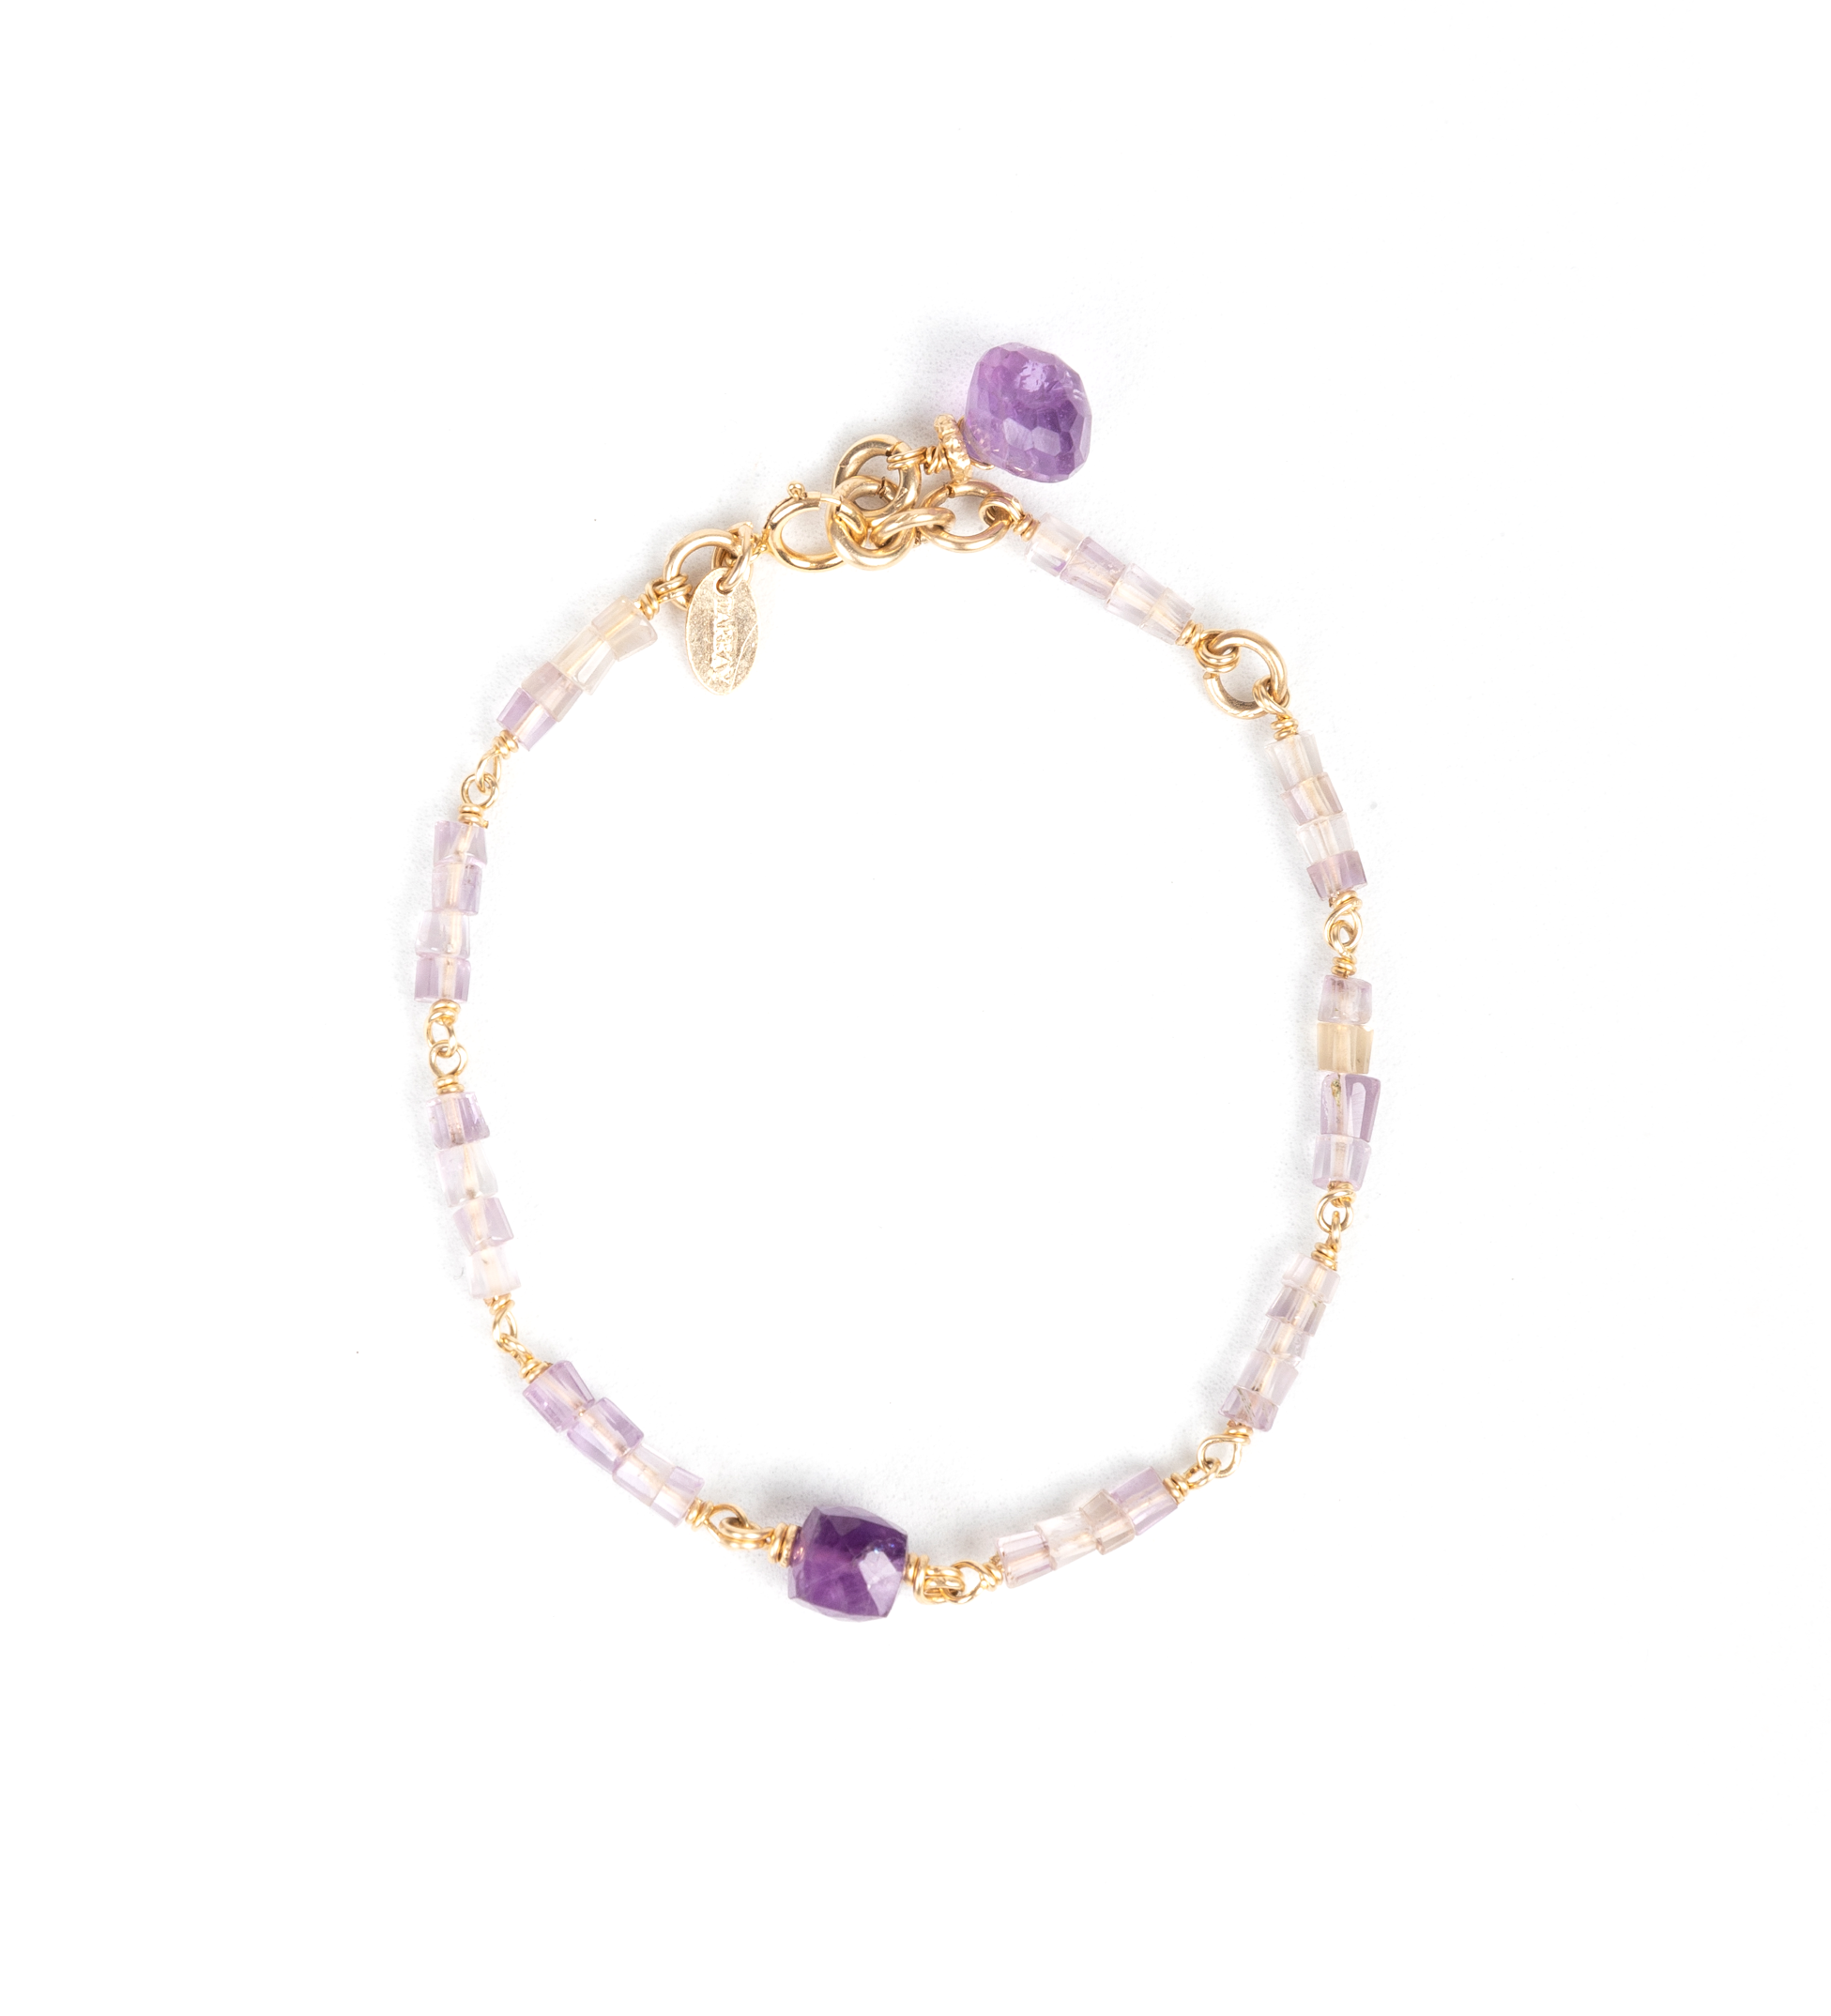 Violet Bracelet #1 - Amethyst Bracelets TARBAY   